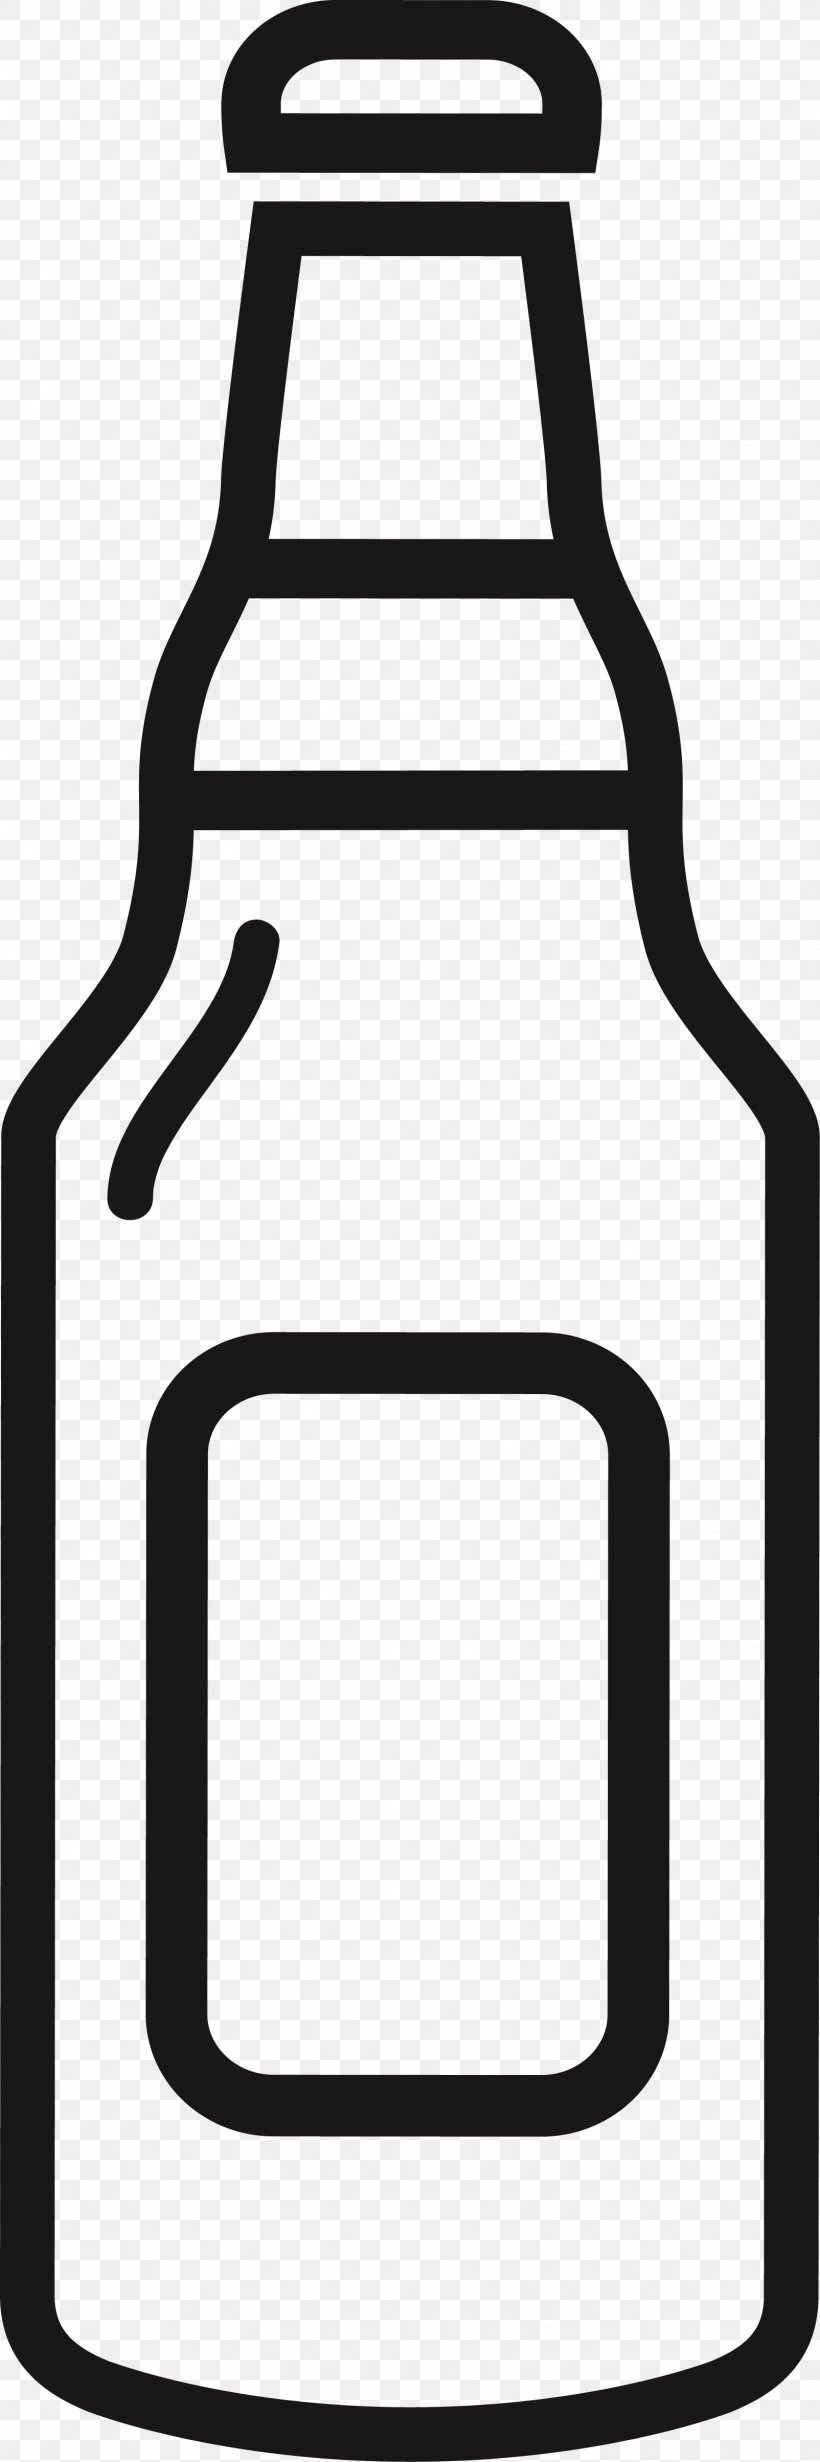 Beer Bottle Draught Beer, PNG, 1604x4816px, Beer, Beer Bottle, Black, Black And White, Draught Beer Download Free